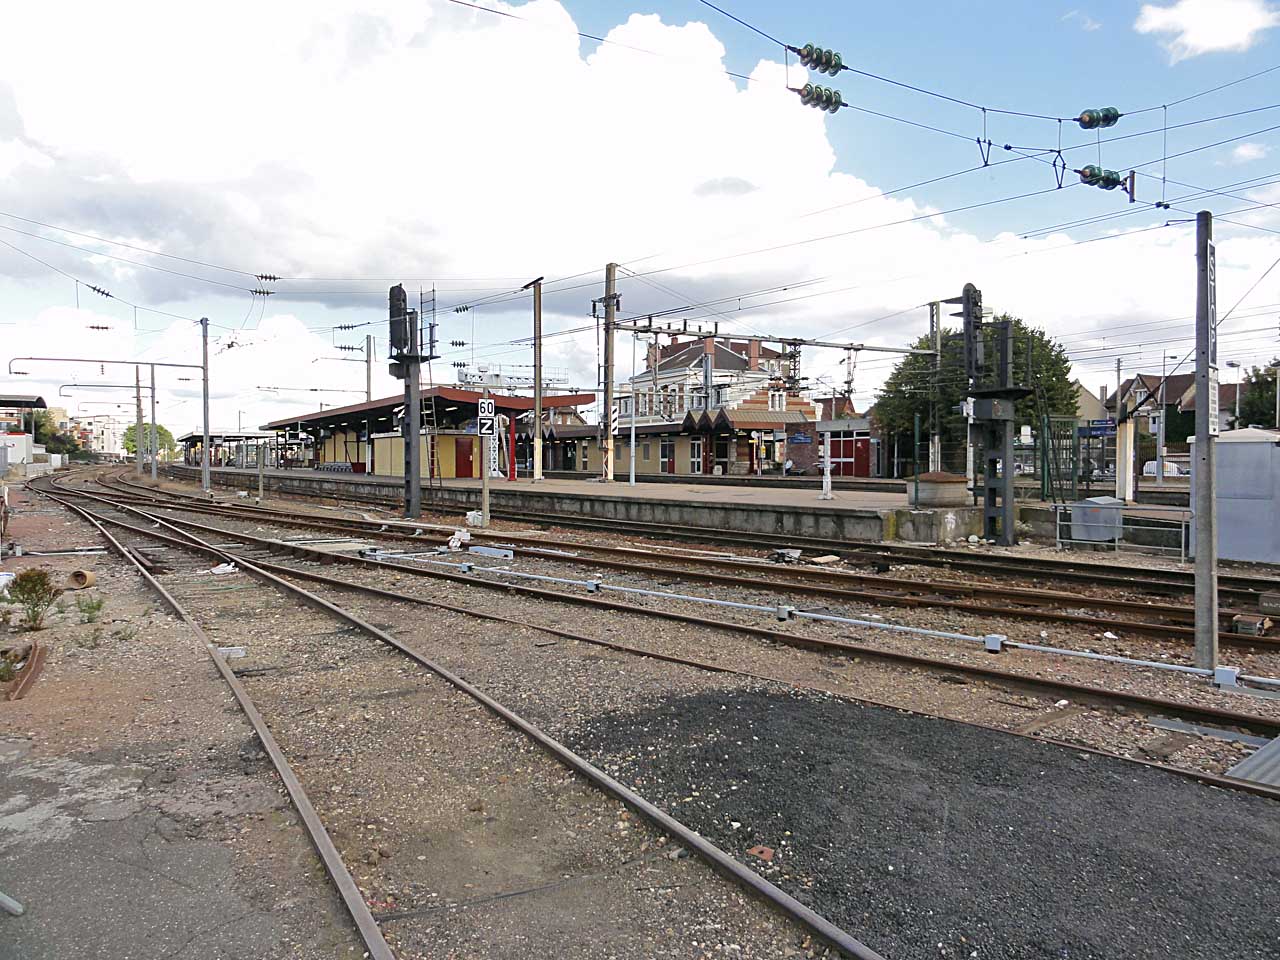 La gare de Conflans-Sainte-Honorine vue des voies